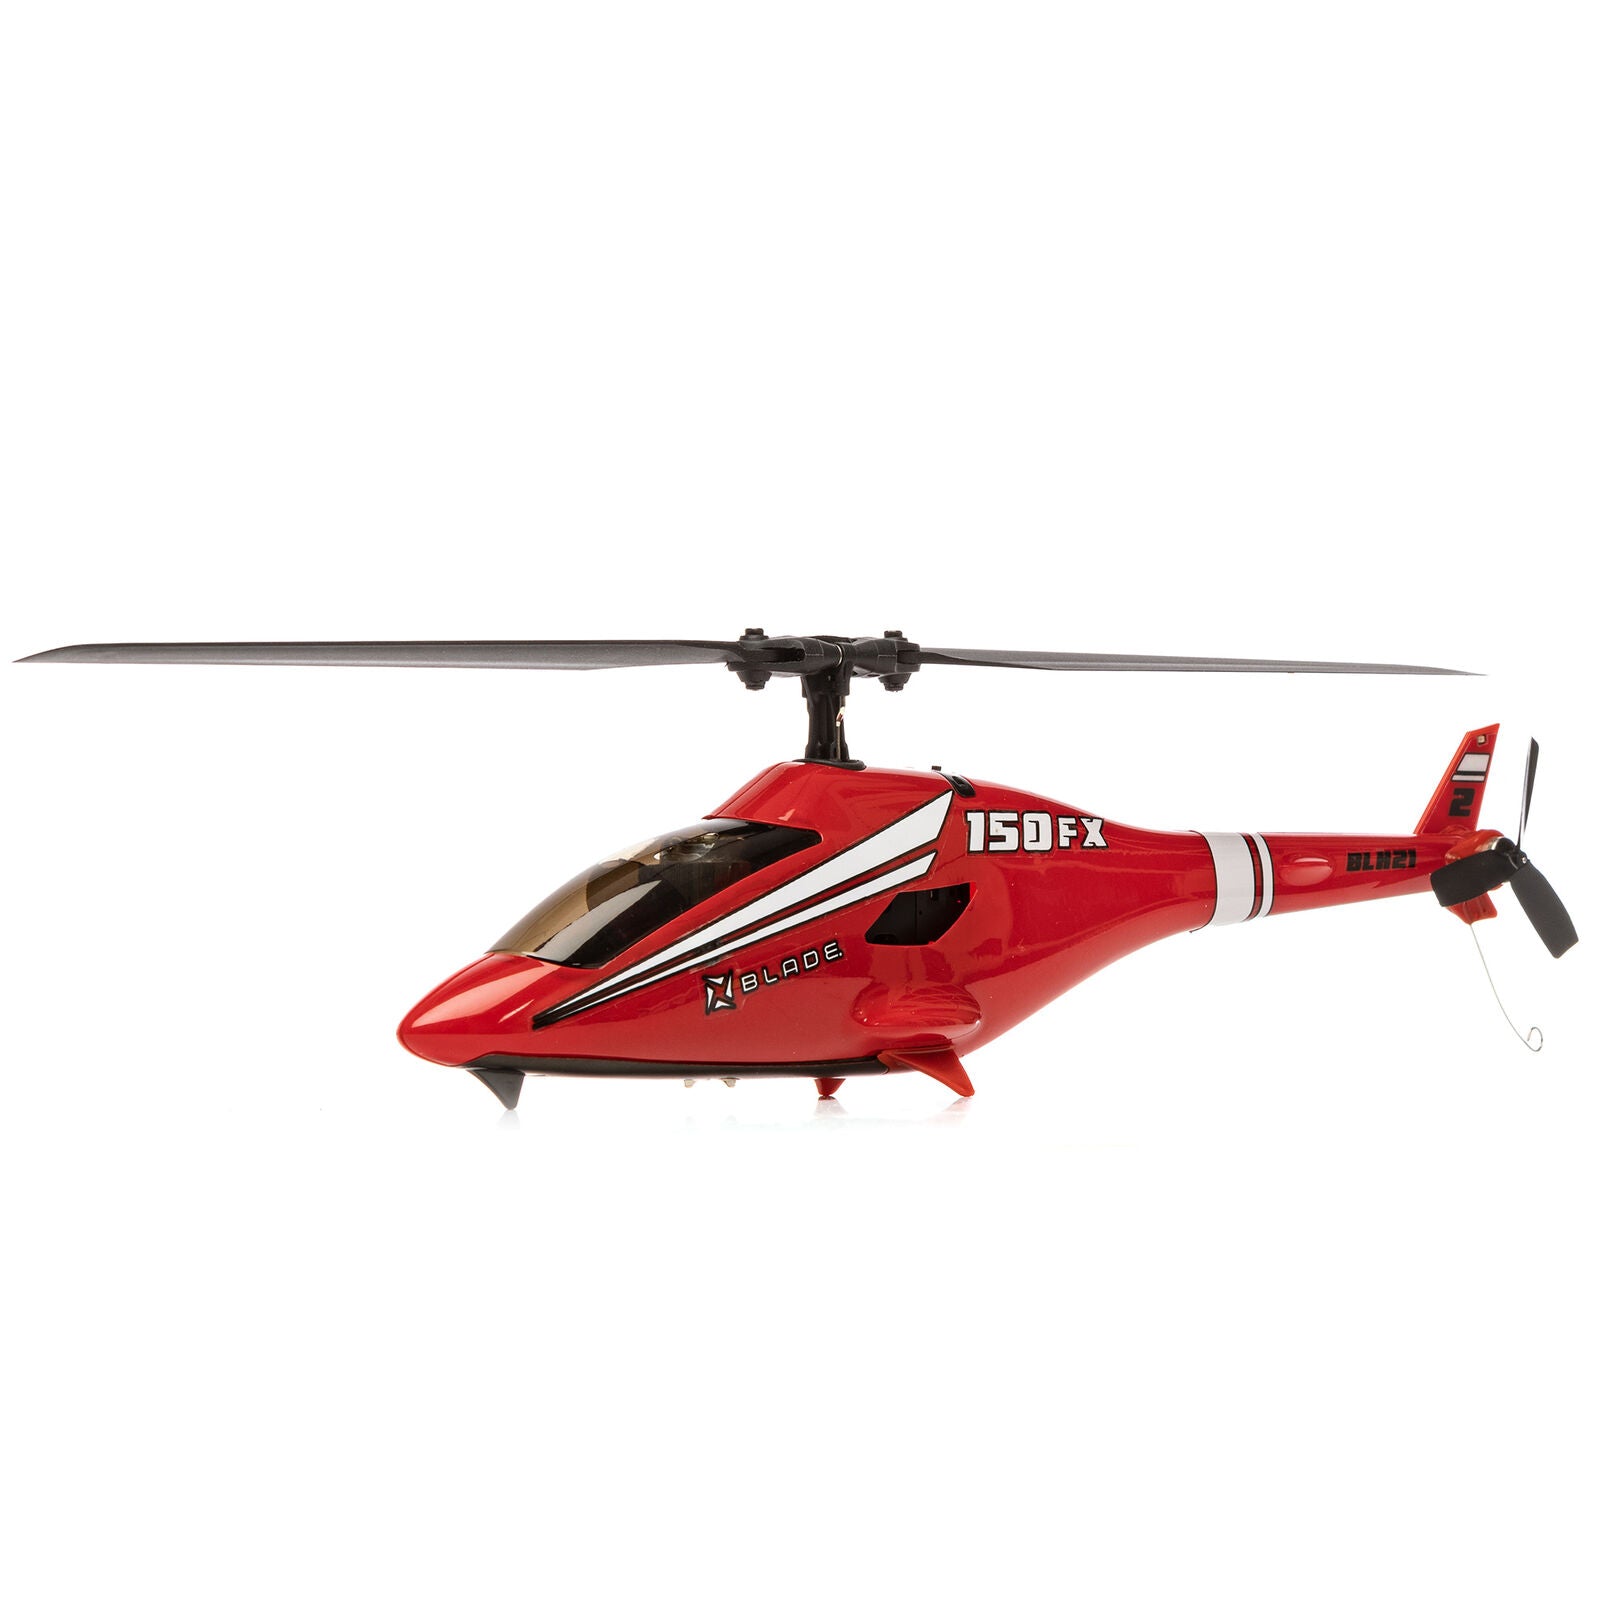 Hélicoptère Blade 150 FX RTF